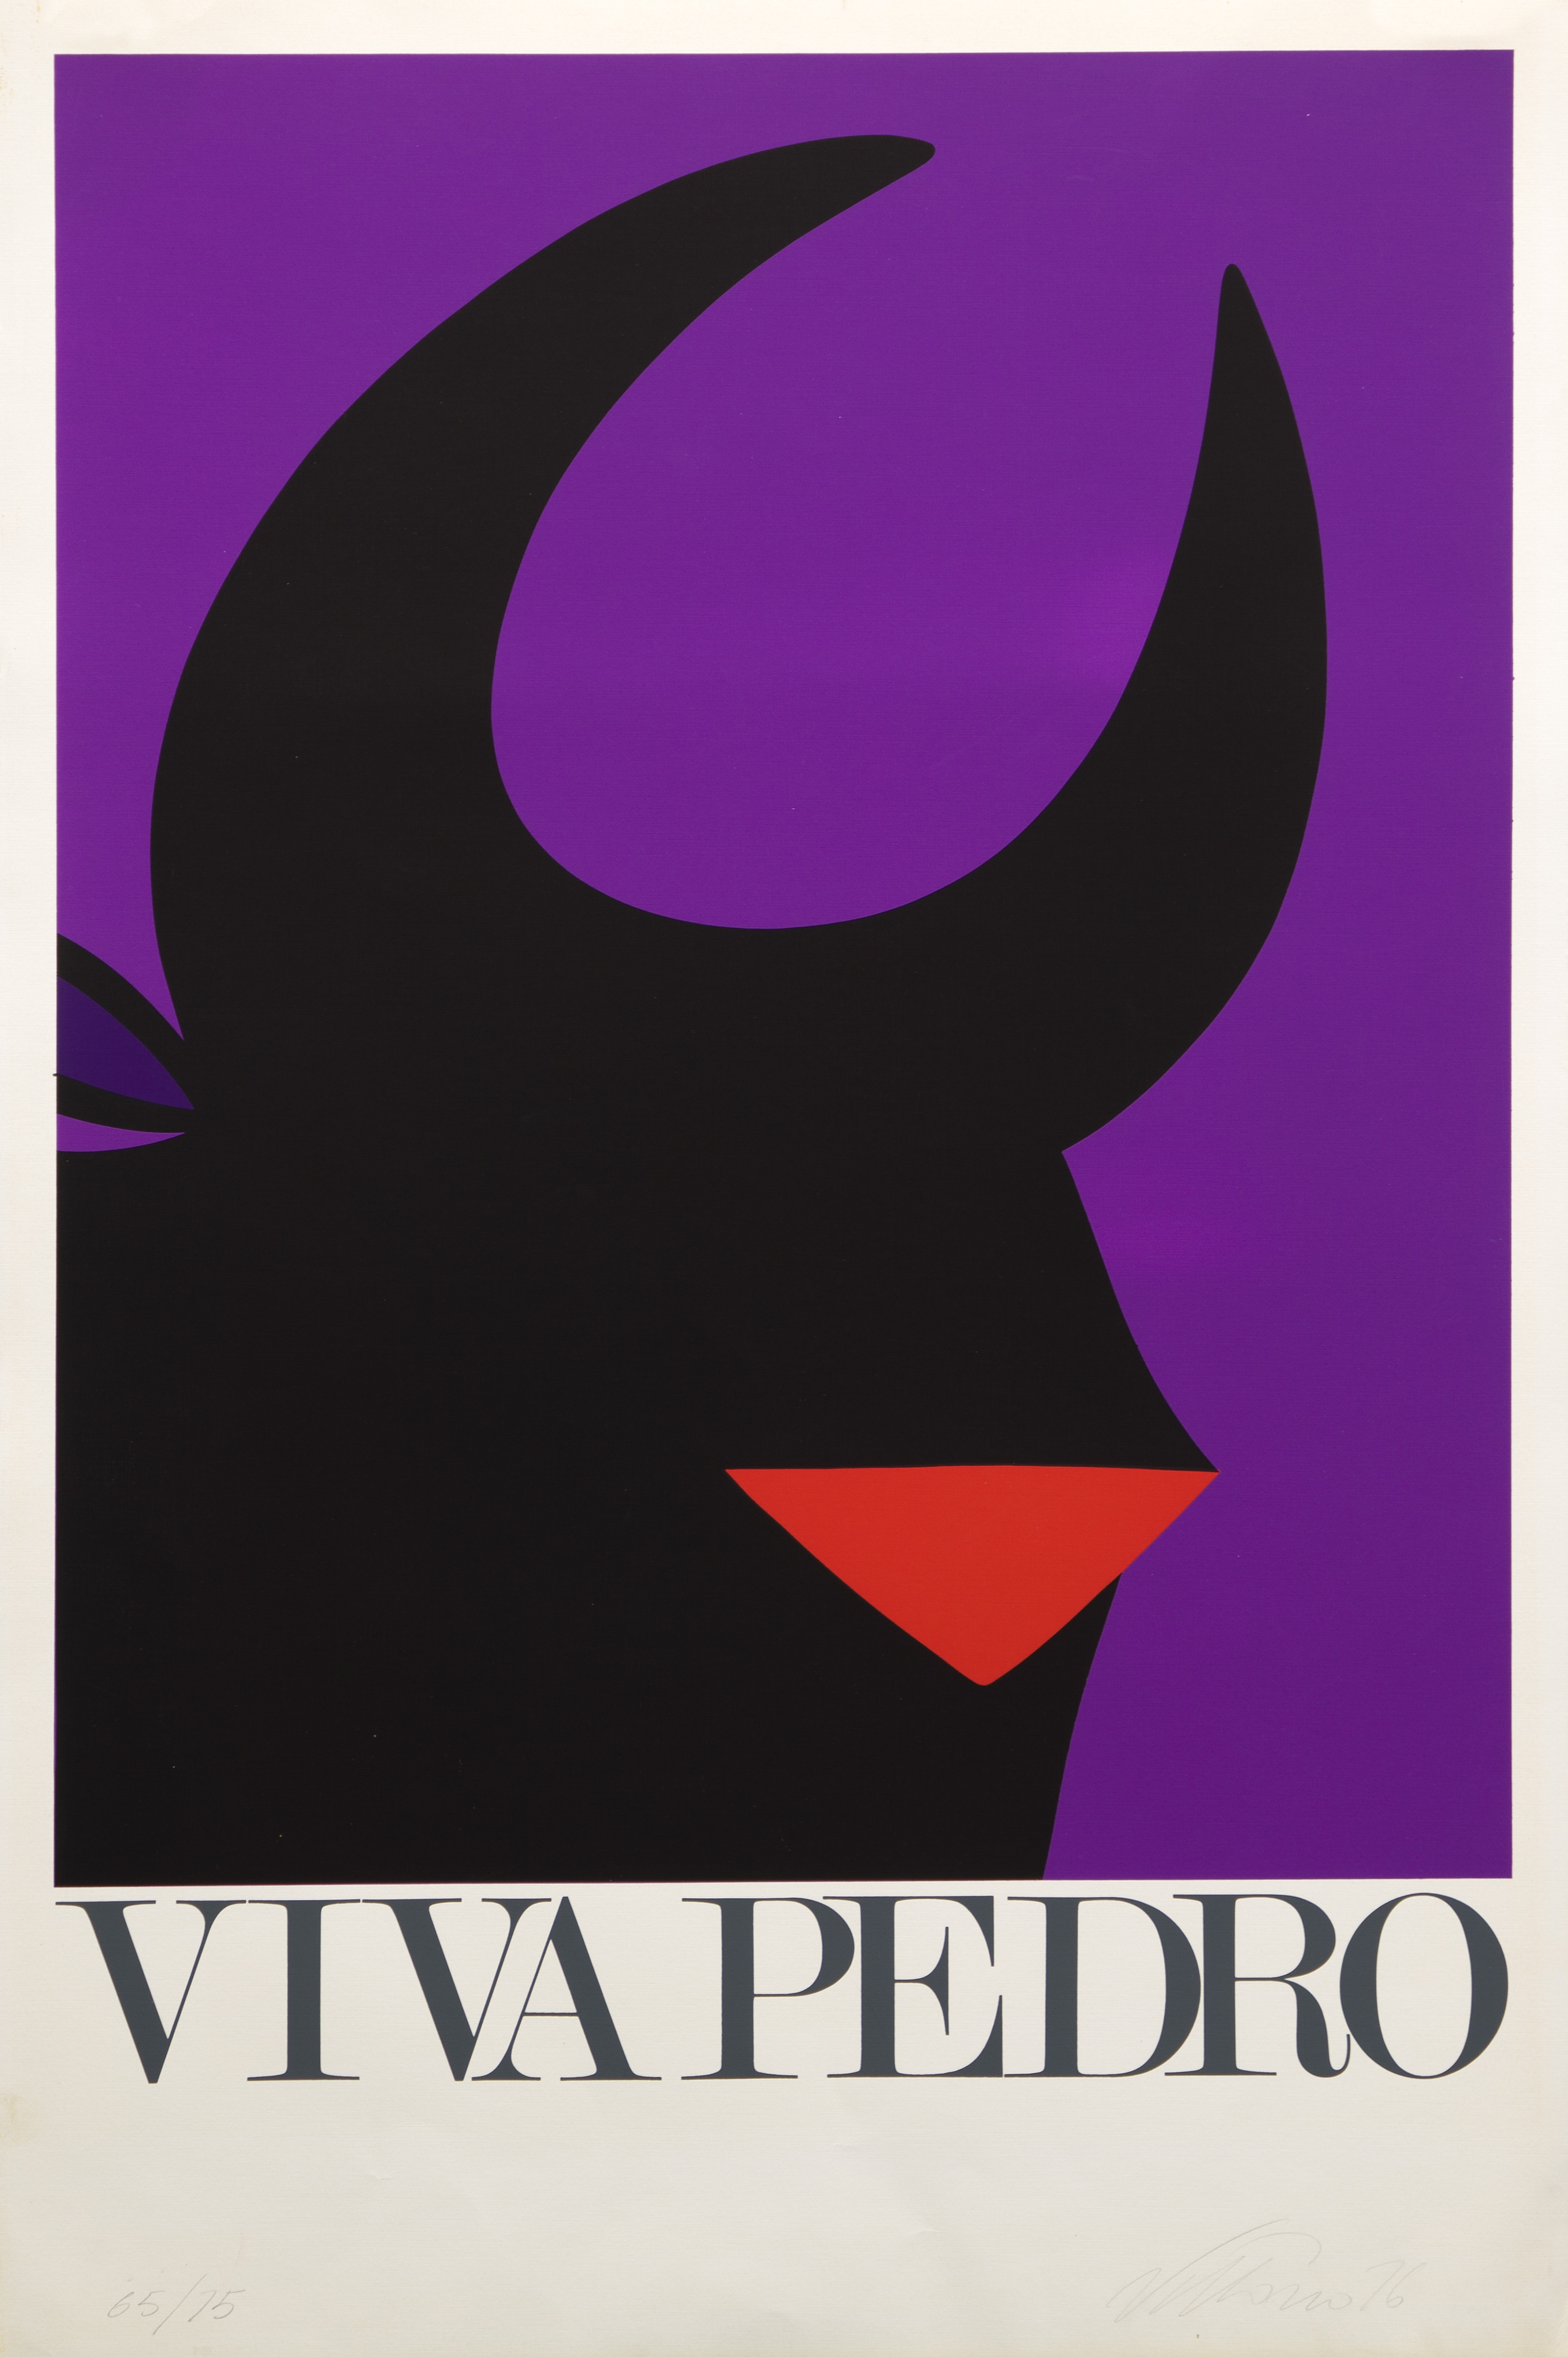 Viva Pedro by Vittorio Fiorucci, 1976